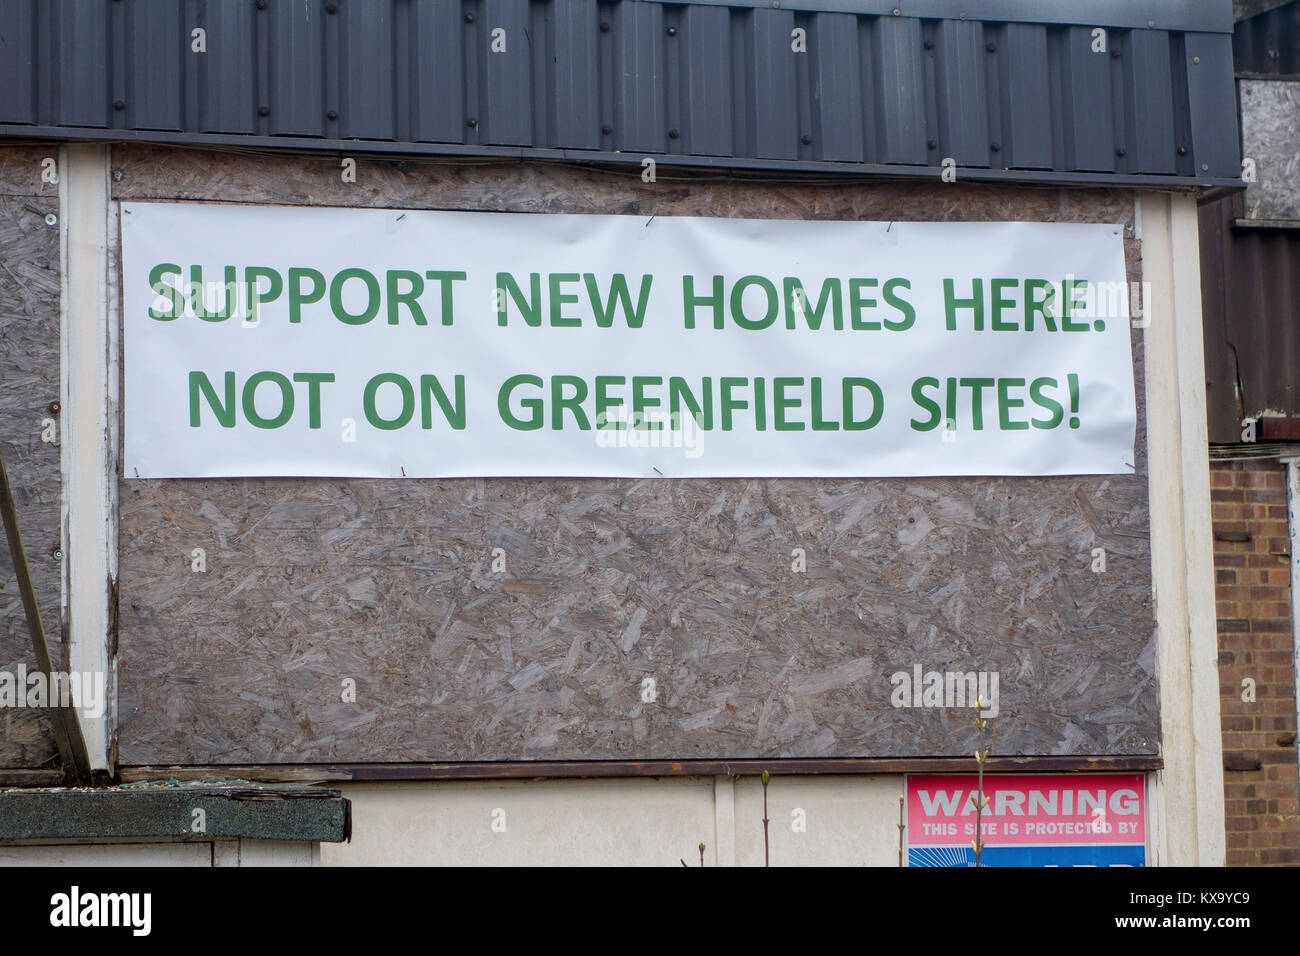 Apoyar nuevos hogares aquí, no en sitios greenfield protesta banner en edificio abandonado Foto de stock